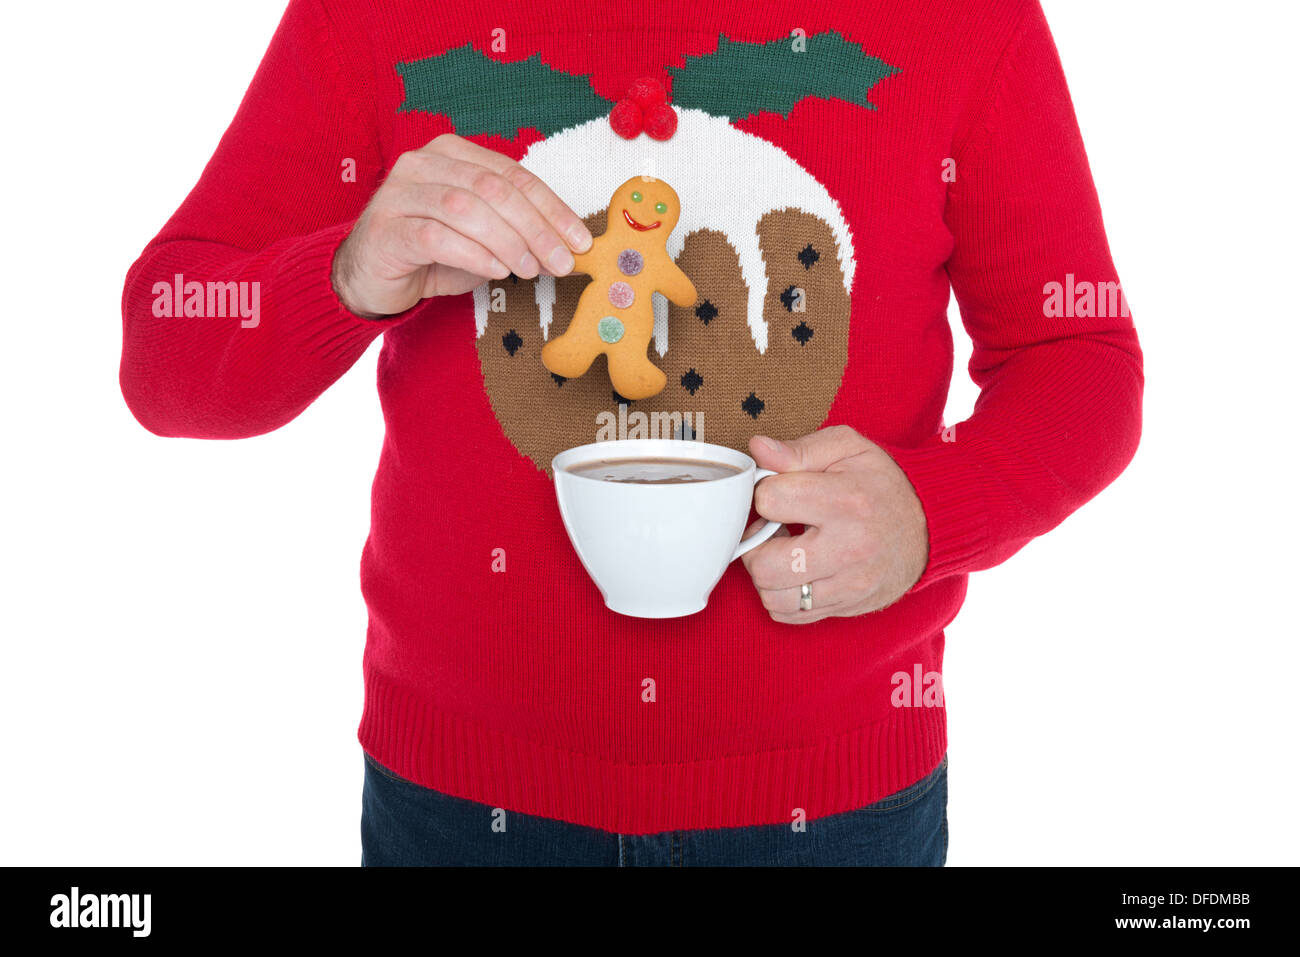 Un homme portant un cavalier sur Noël à tremper un gingerbread man dans une tasse de chocolat chaud, isolé sur un fond blanc. Banque D'Images